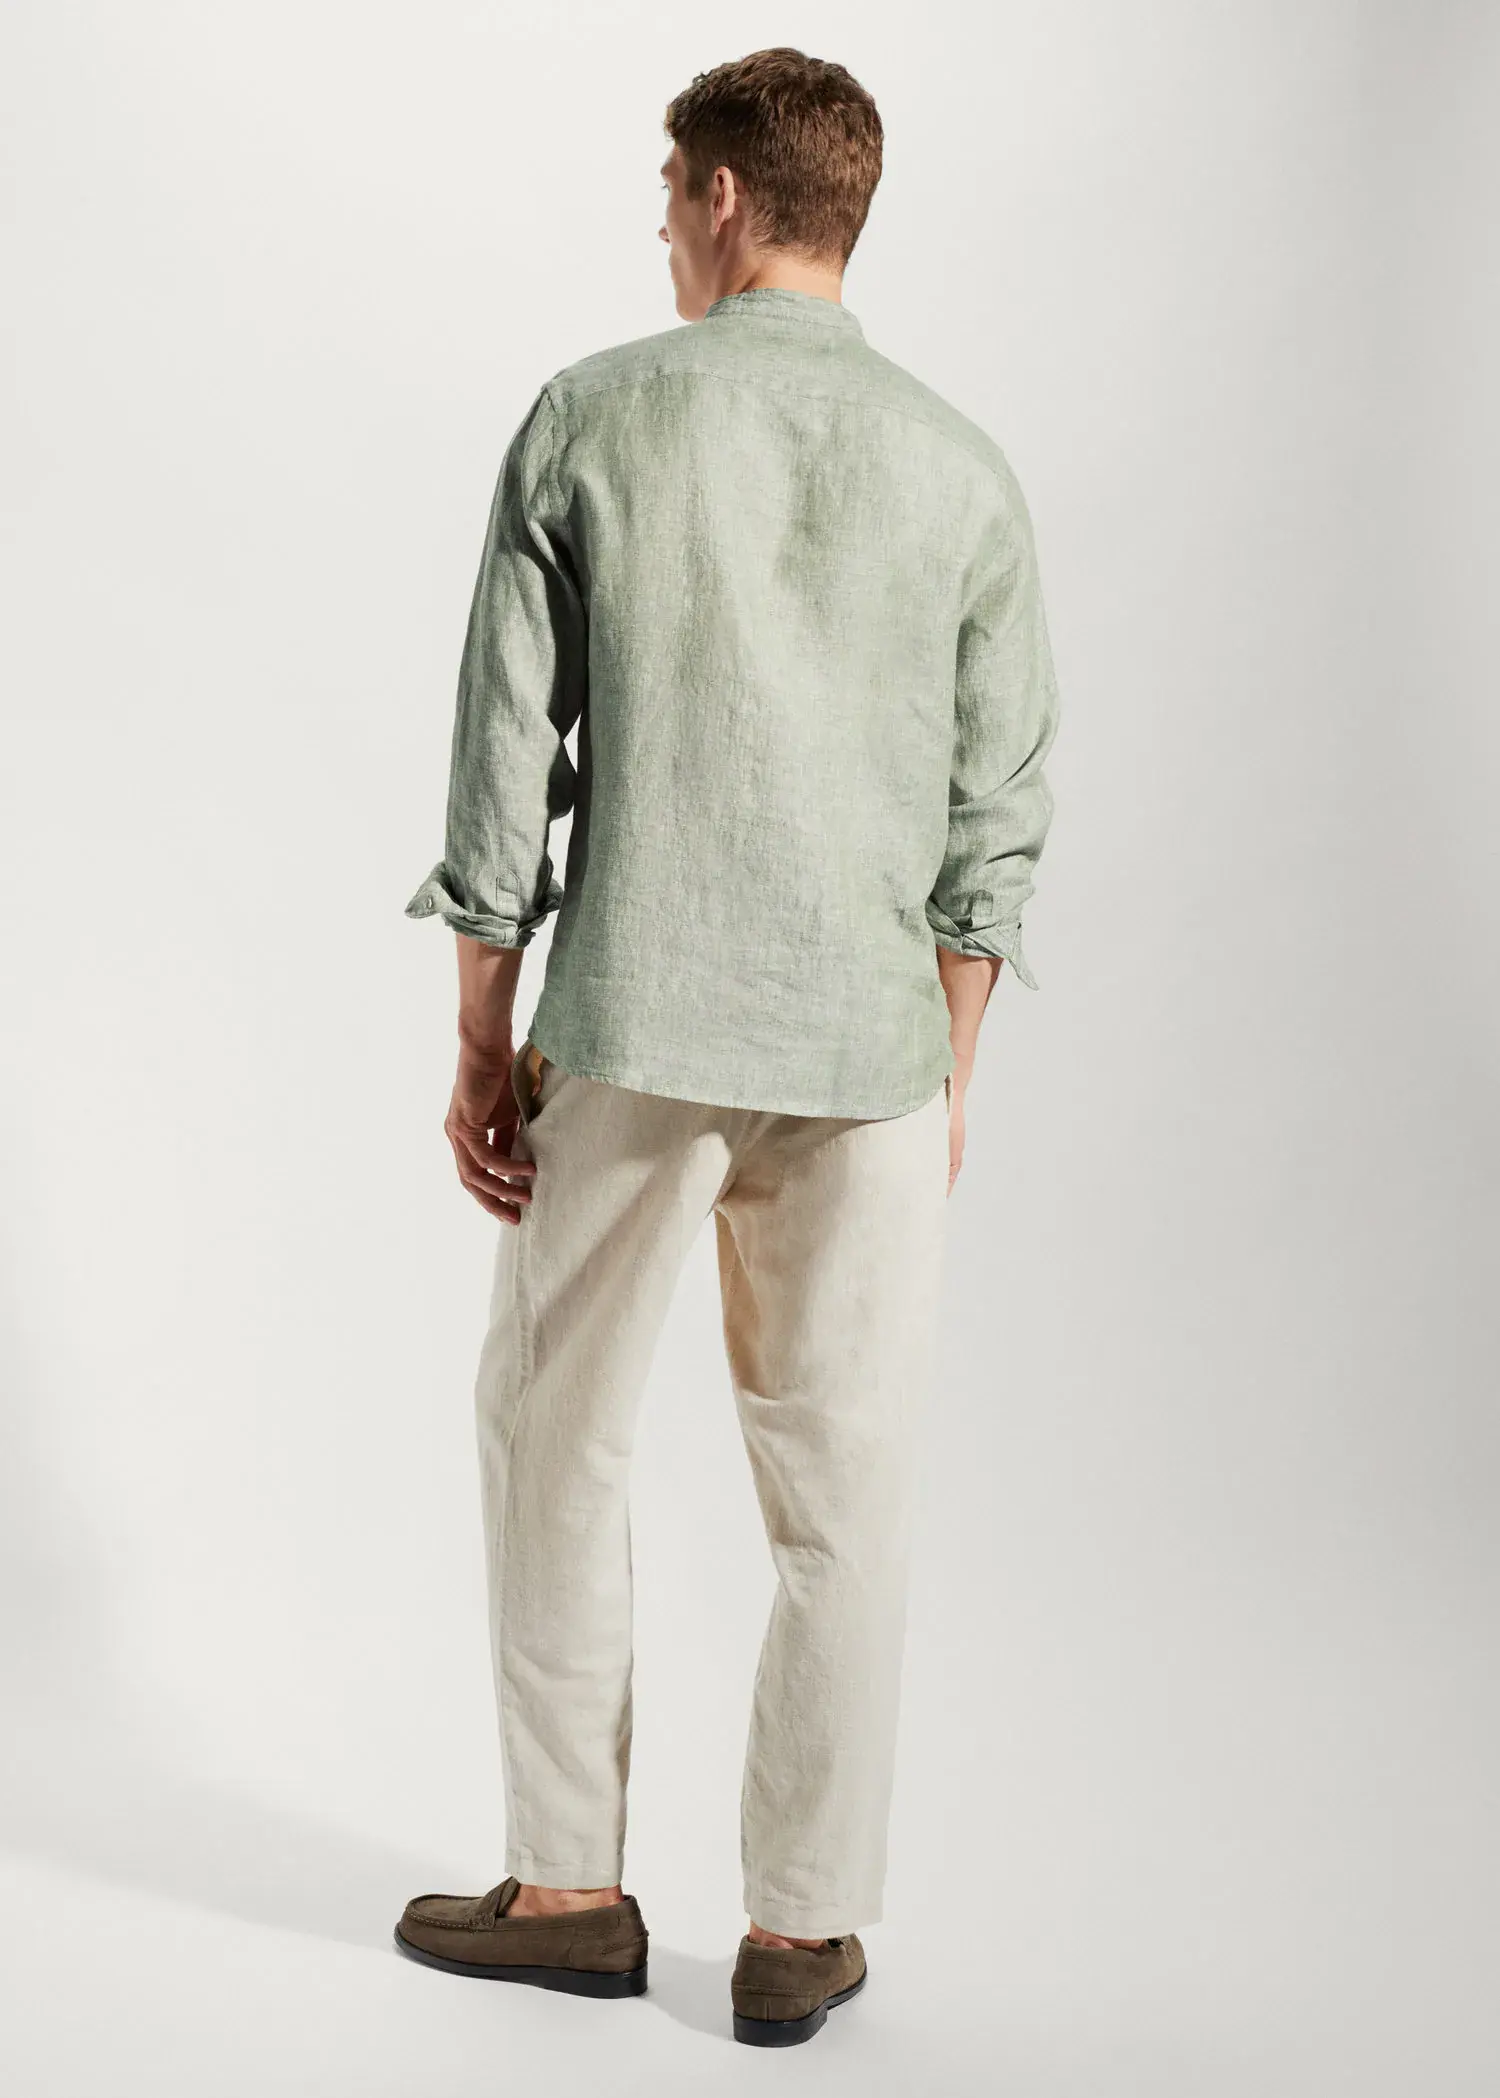 Mango 100% linen Mao collar shirt. a man wearing a green shirt and white pants. 